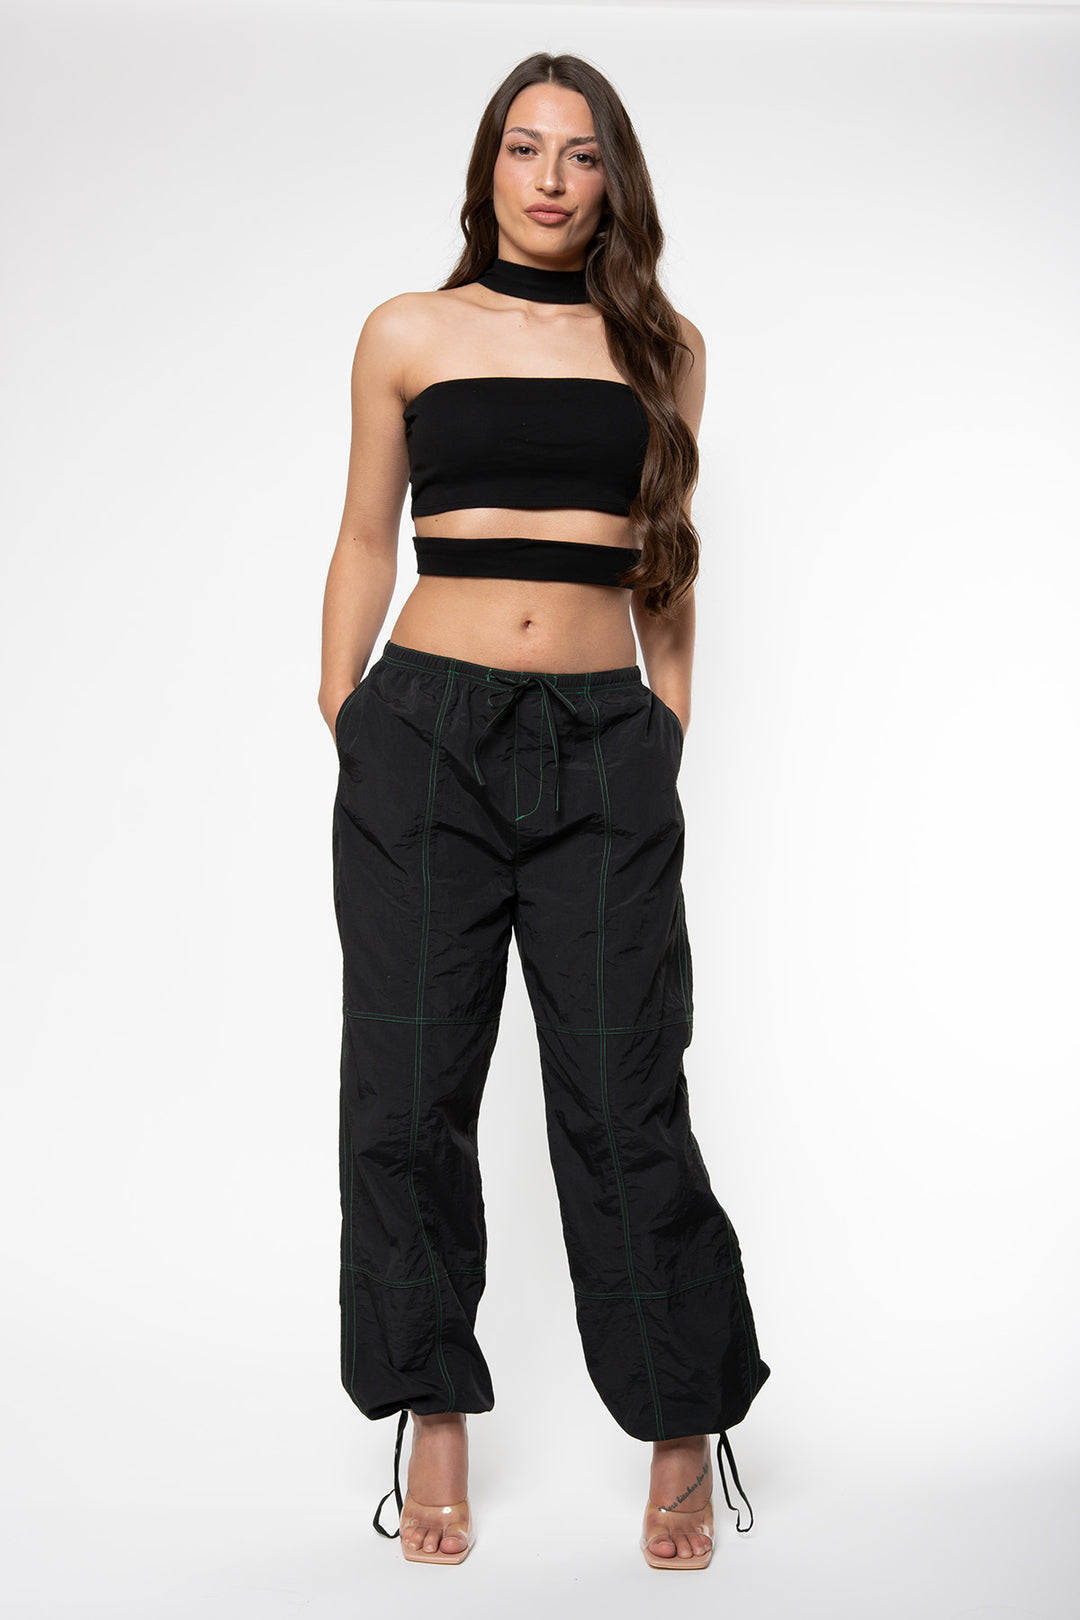 Carly Parachute Pants - Black Pants Routines Fashion   